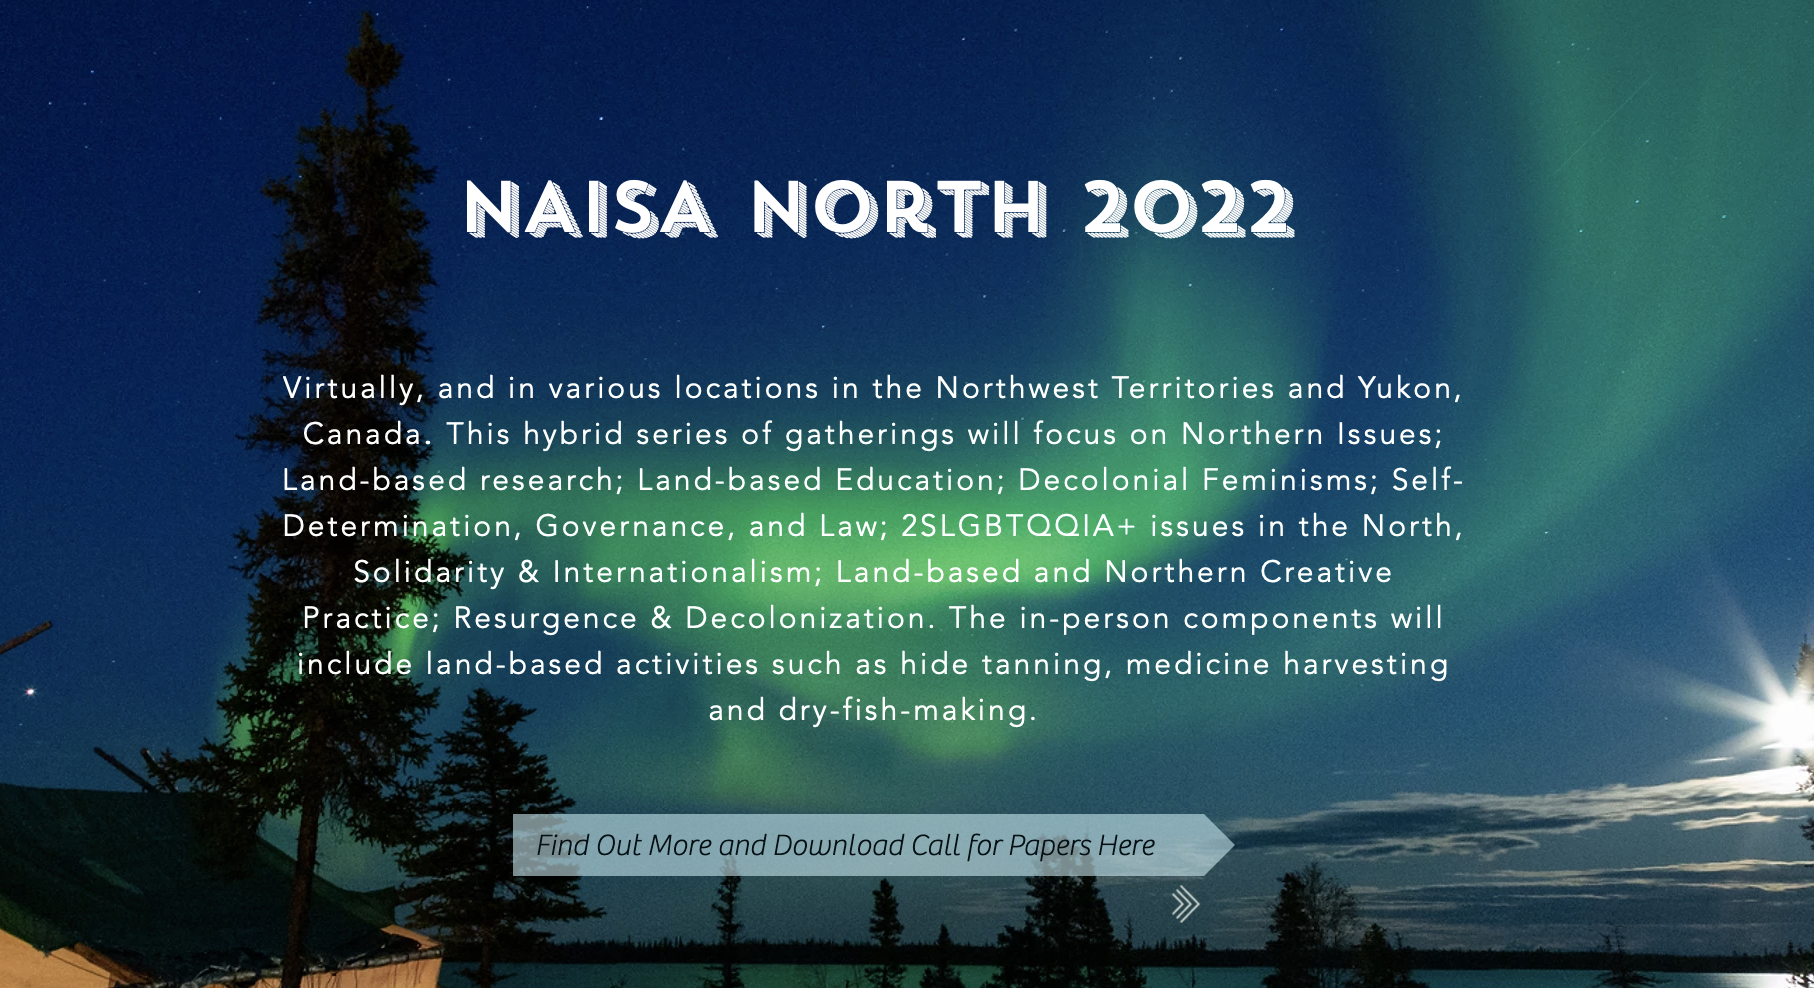 NAISA North 2022